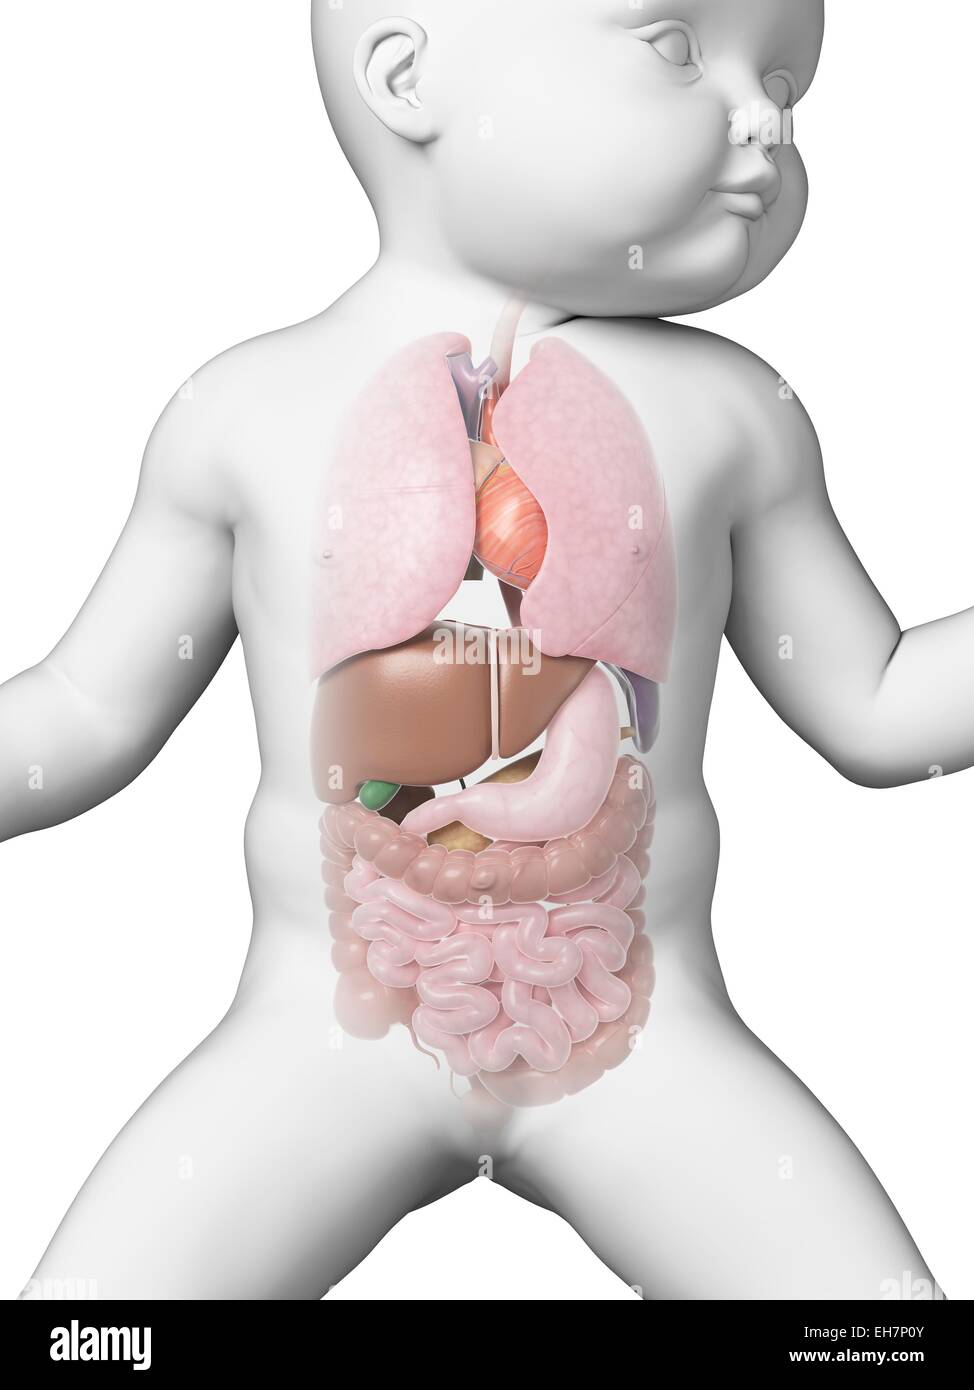 фото ребенка фото органов